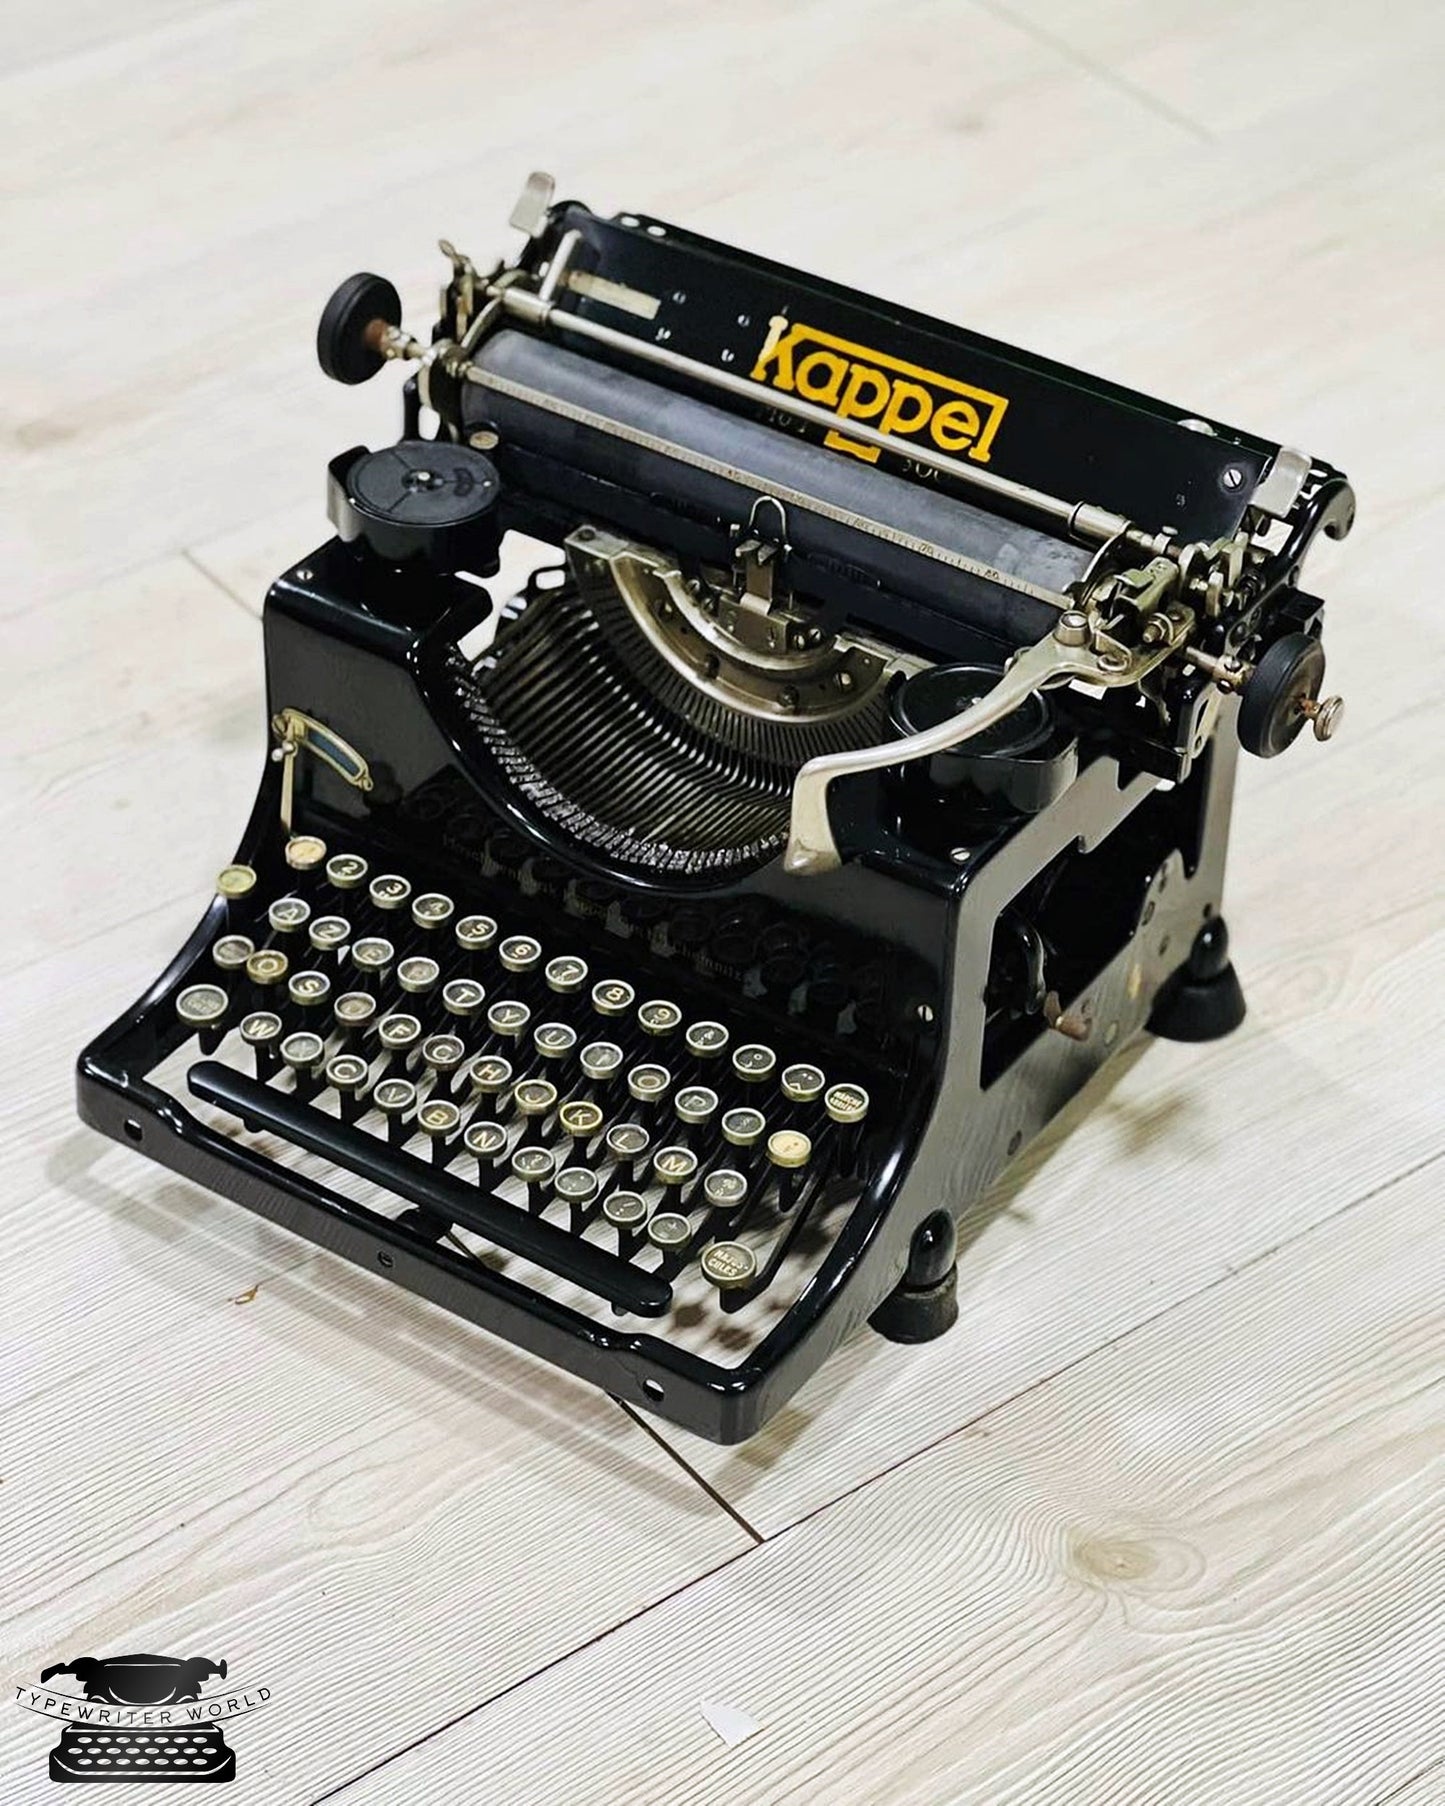 Kappel Typewriter | Antique Typewriter | Working Typewriter | Working Perfectly | Fabulous Gift,typewriter working